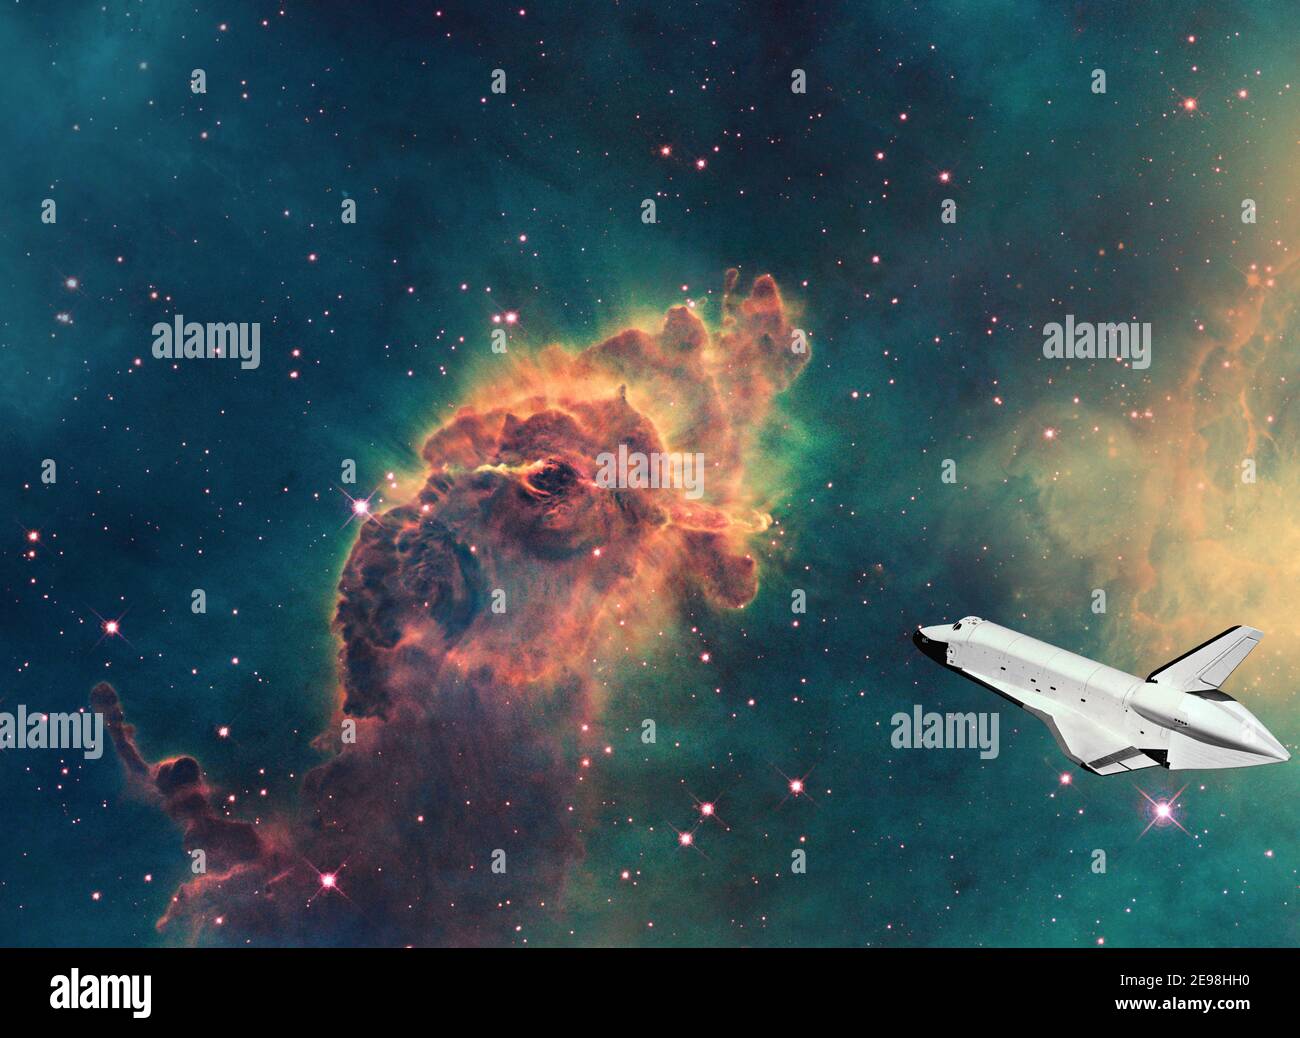 Image futuriste du concept de tourisme de voyage spatial, passant la Carina Nebula avec des engins spatiaux civils Banque D'Images